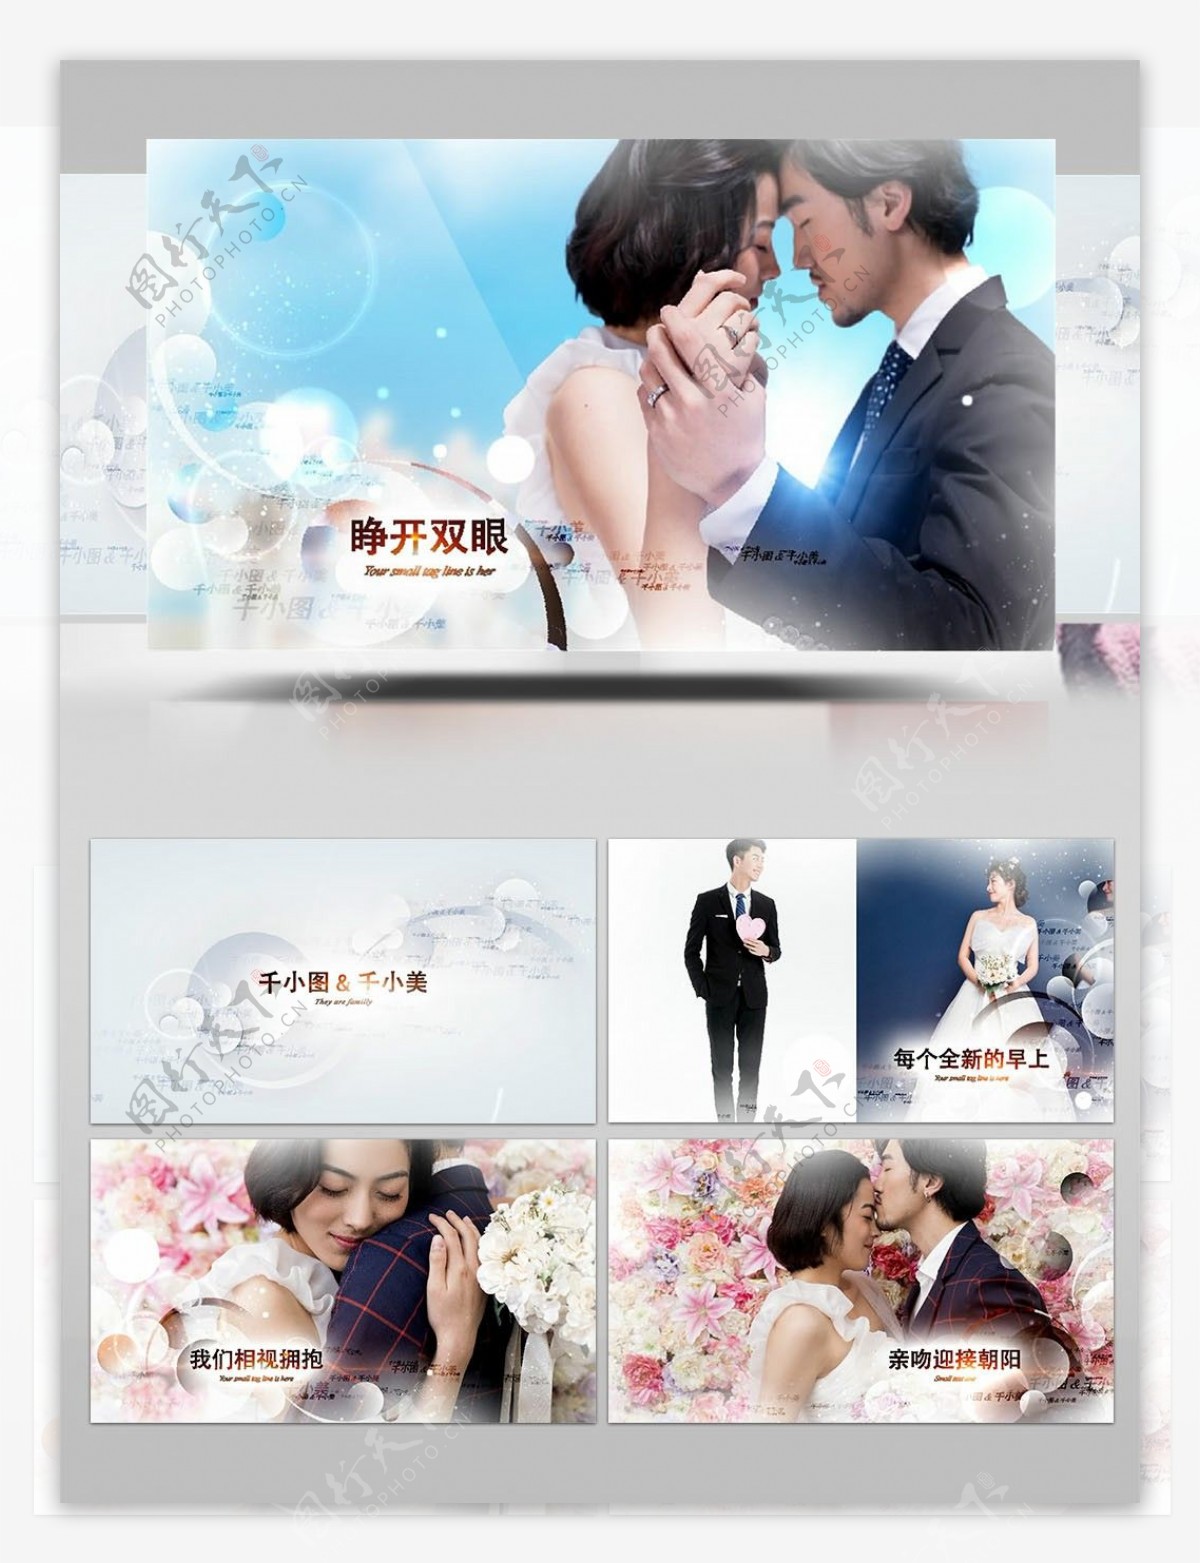 白色圣洁婚礼开场图像展示AE模板